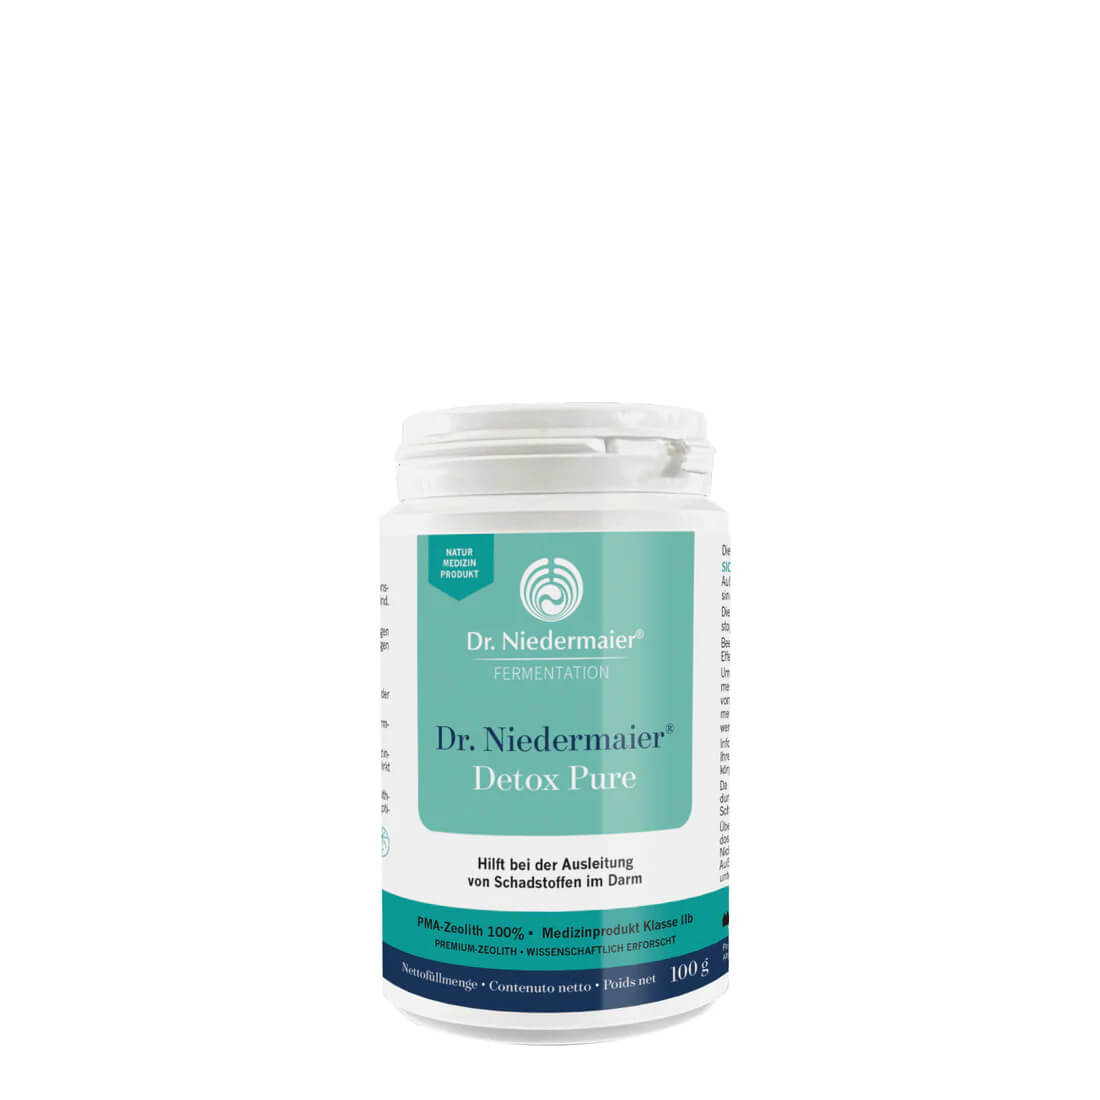 Dr. Niedermaier Detox Pure 100g | Natur-Medizinprodukt zur Ausleitung von Schadstoffen im Darm